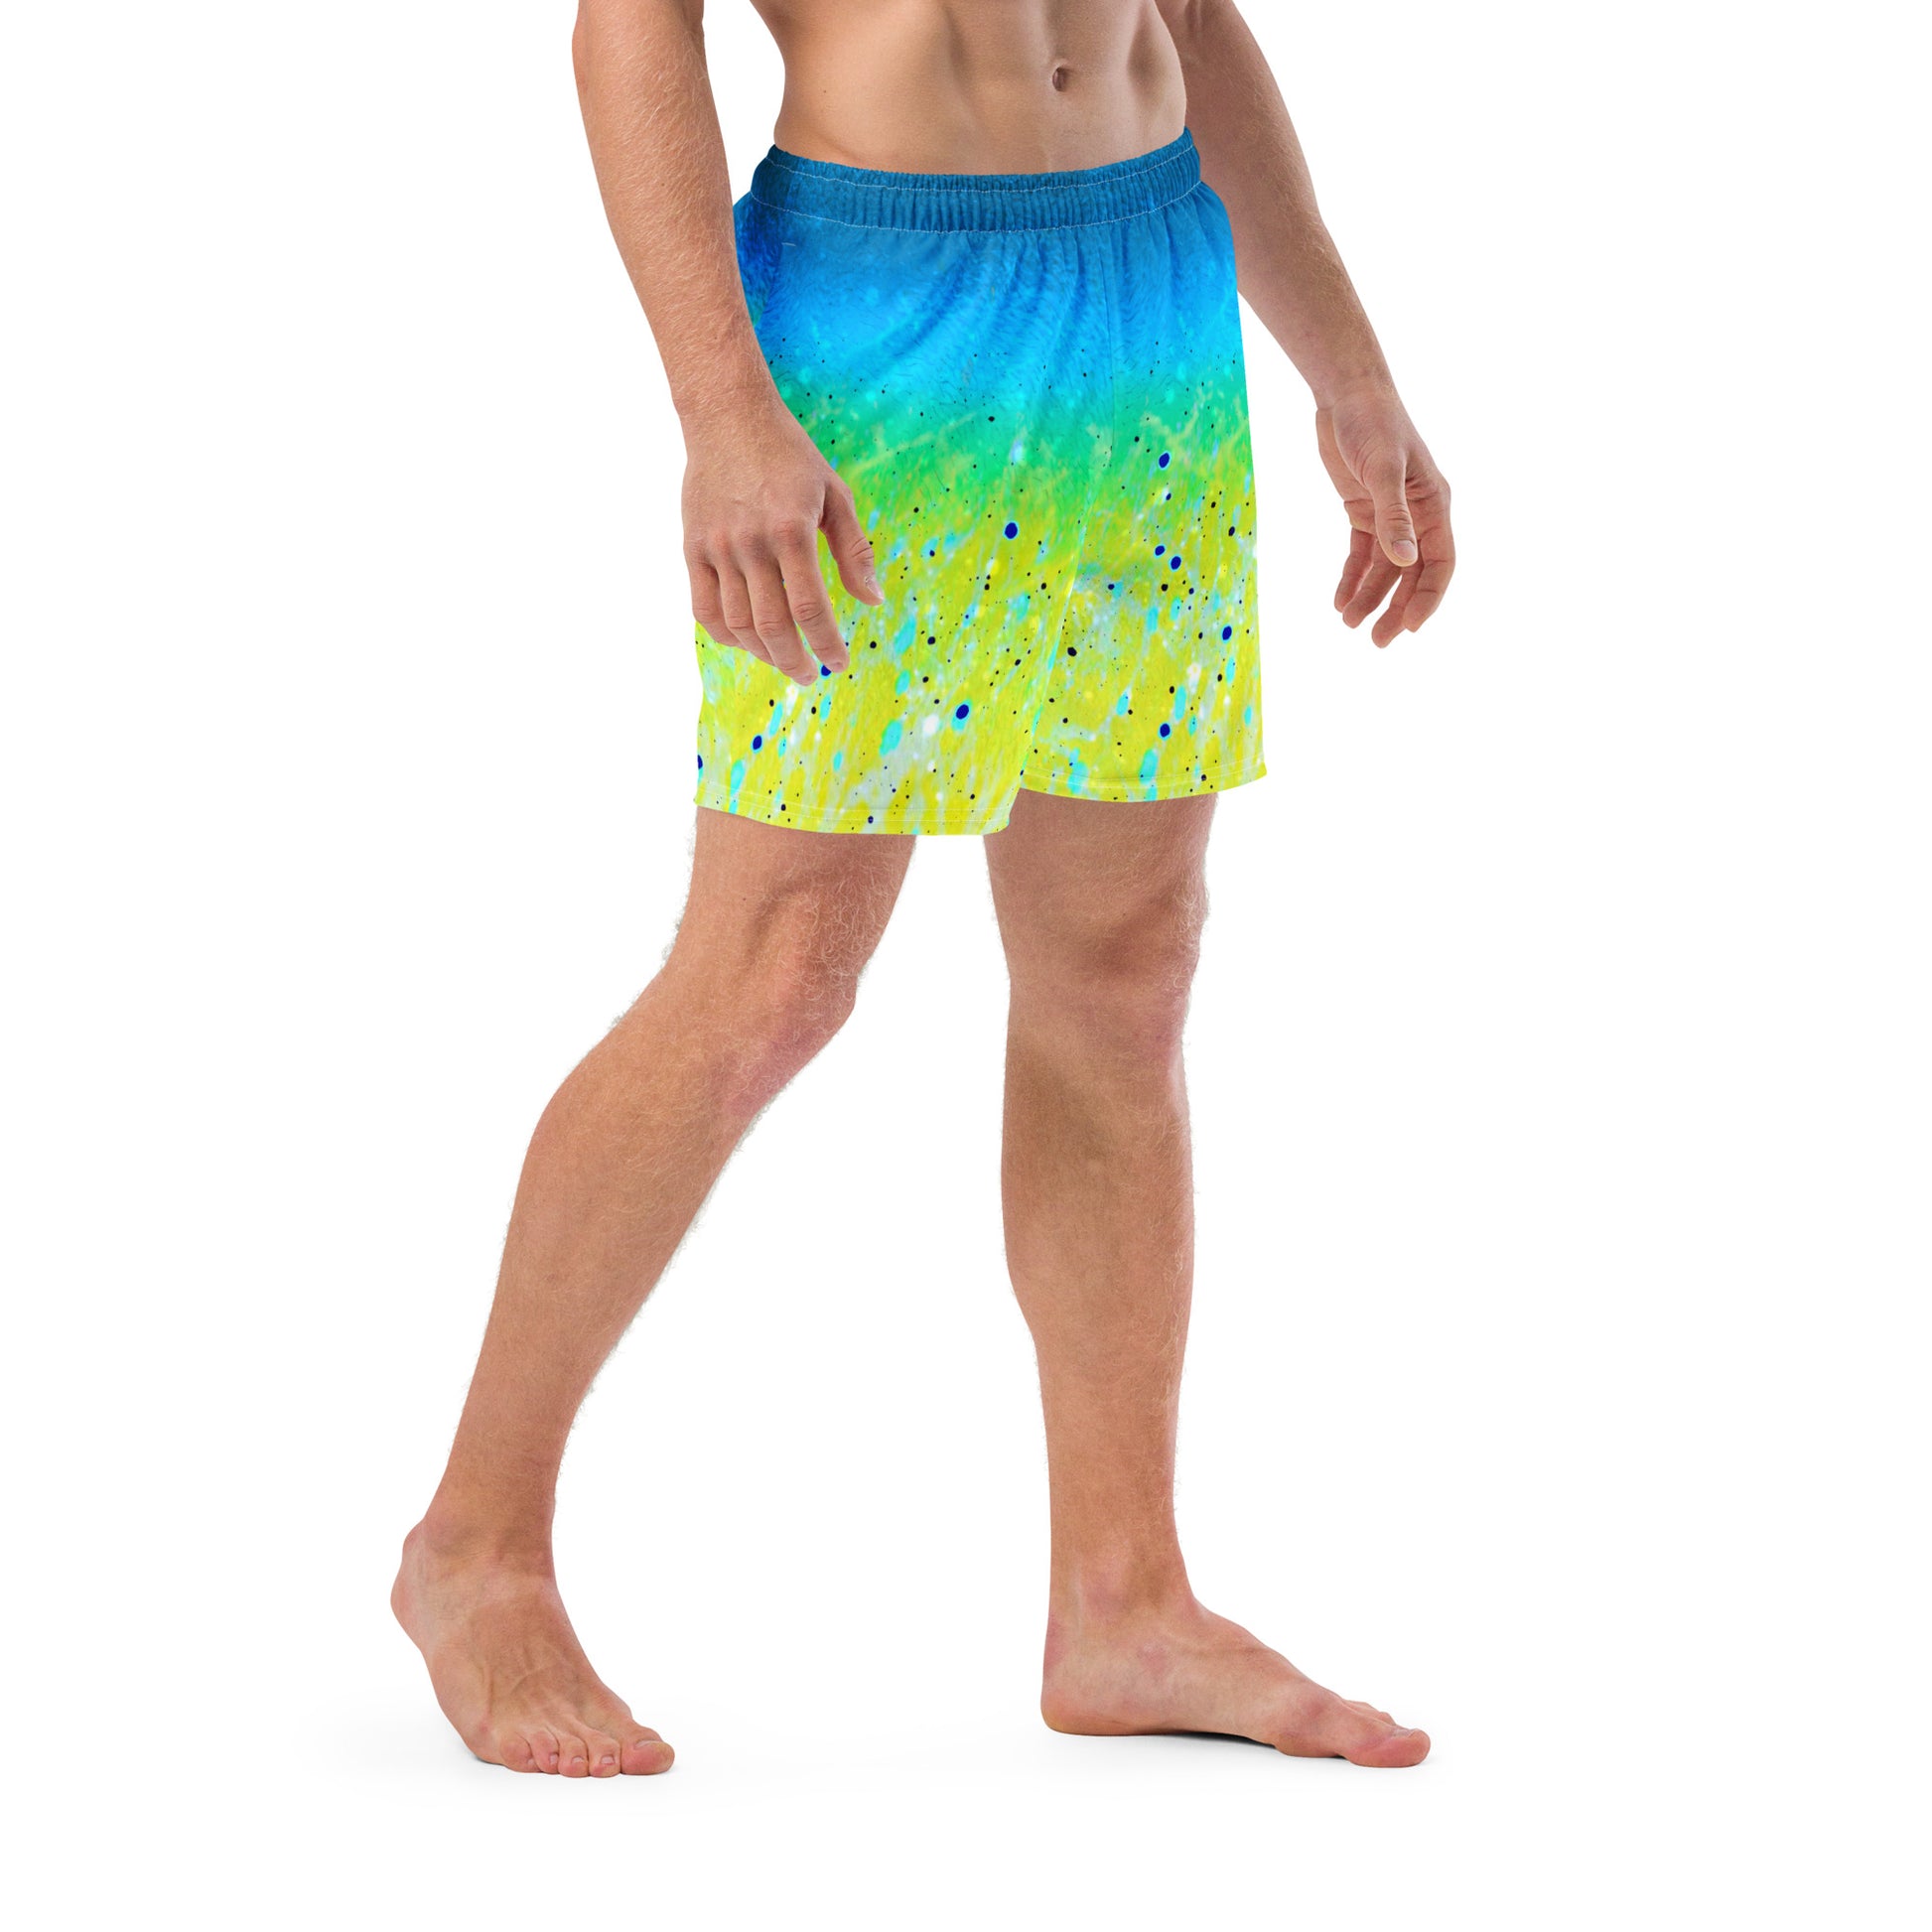  Men's Swim Trunks | Mahi Mahi Print ArcZeal Designs